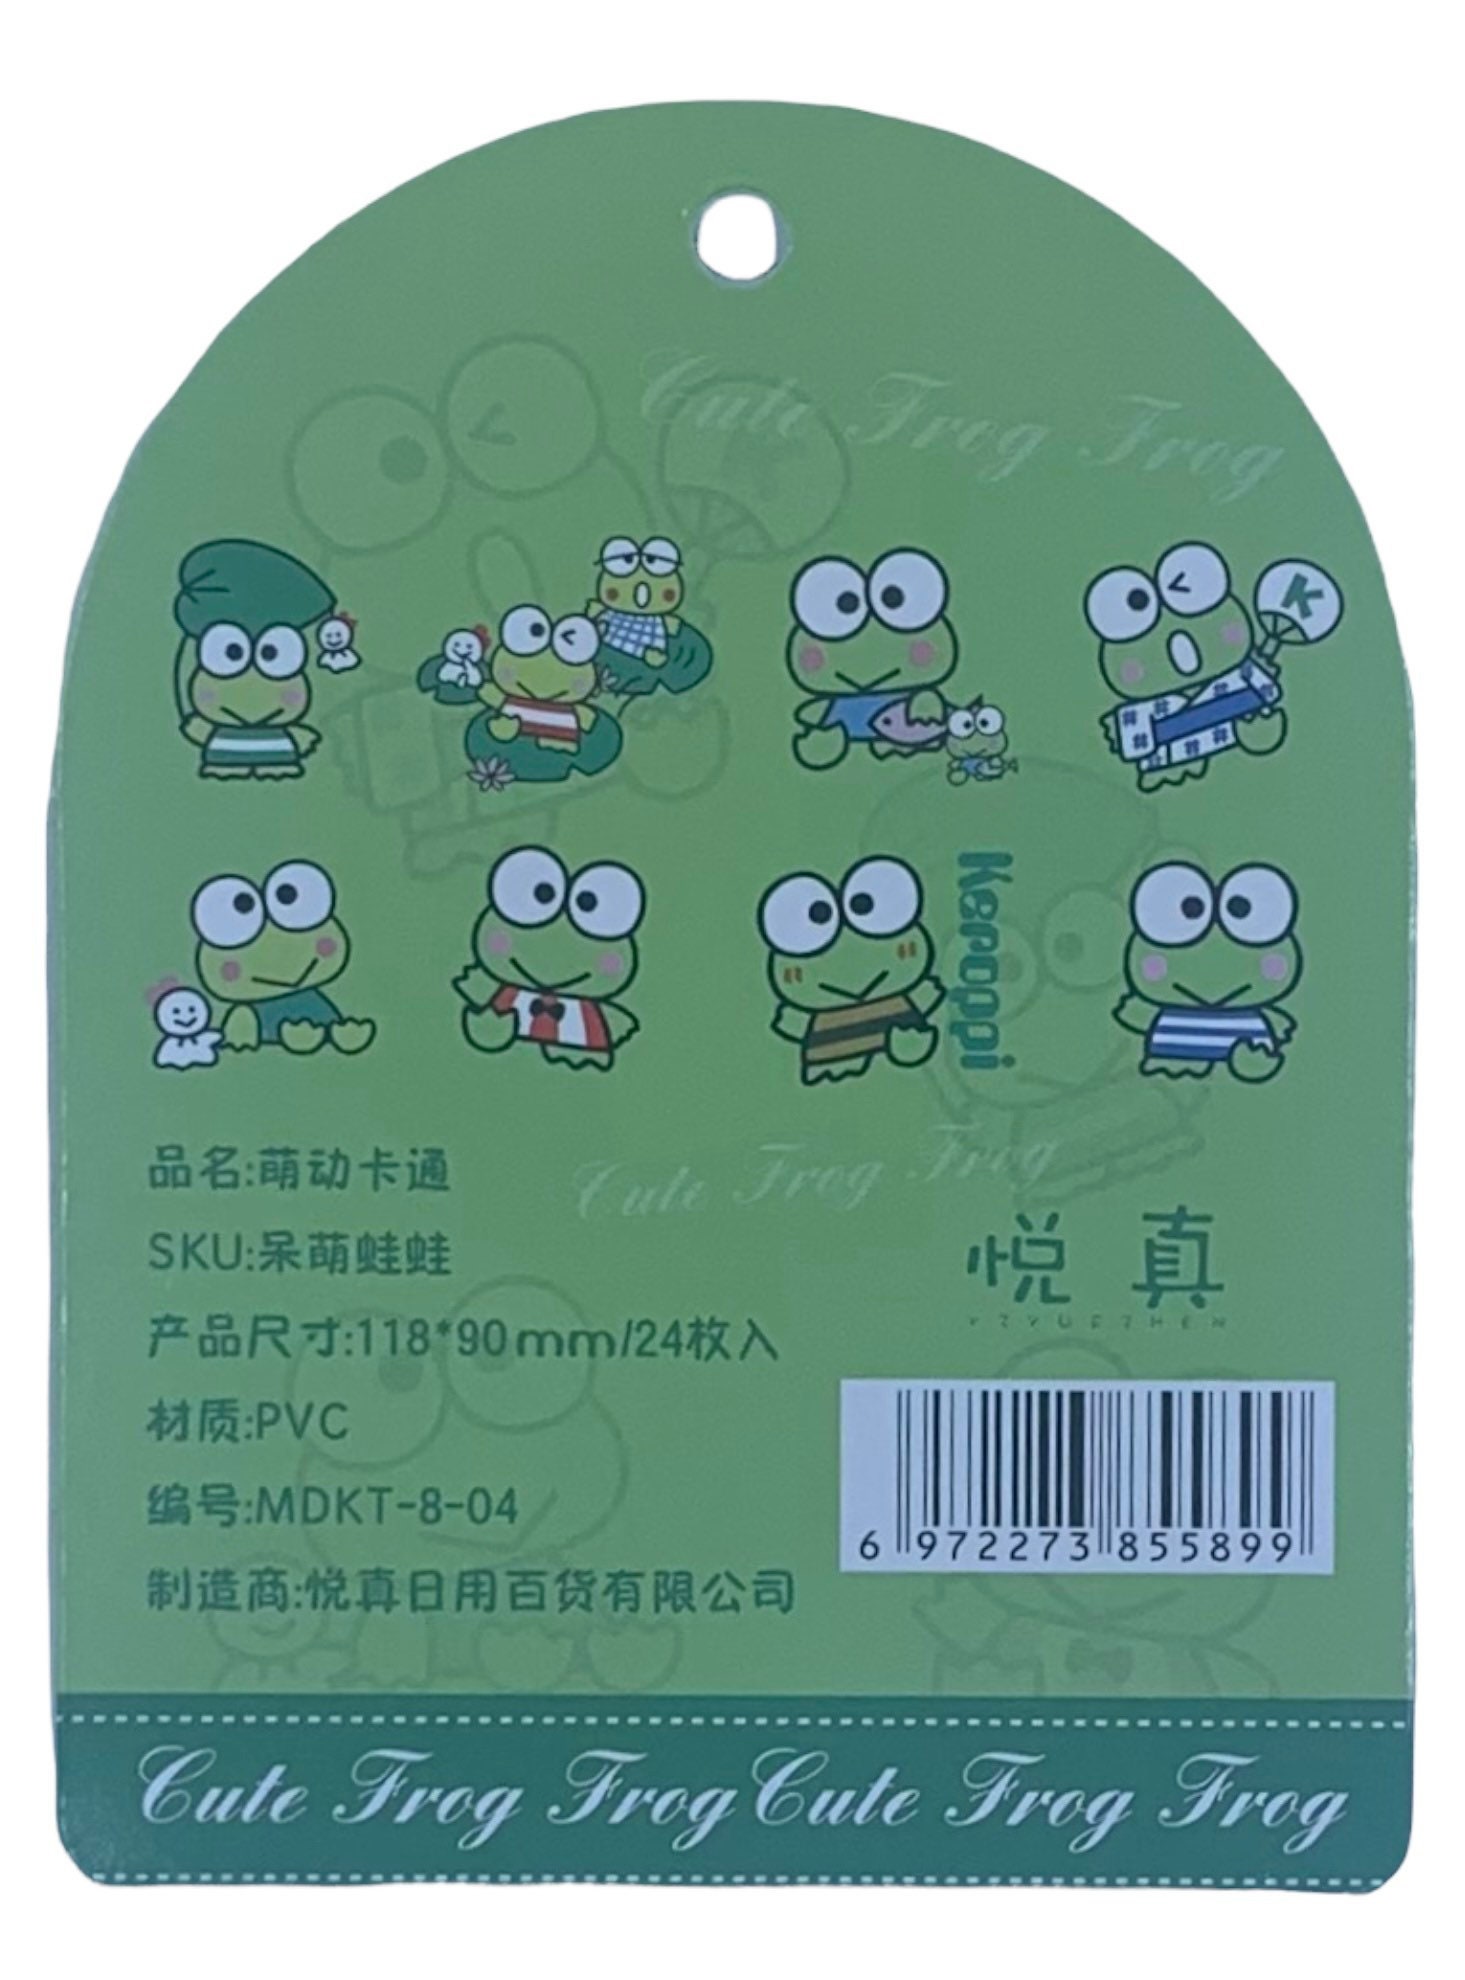 Keroppi Sanrio Character - Cute Green Frog Kero Kero - Sticker Sheet -  fedupfrogs's Ko-fi Shop